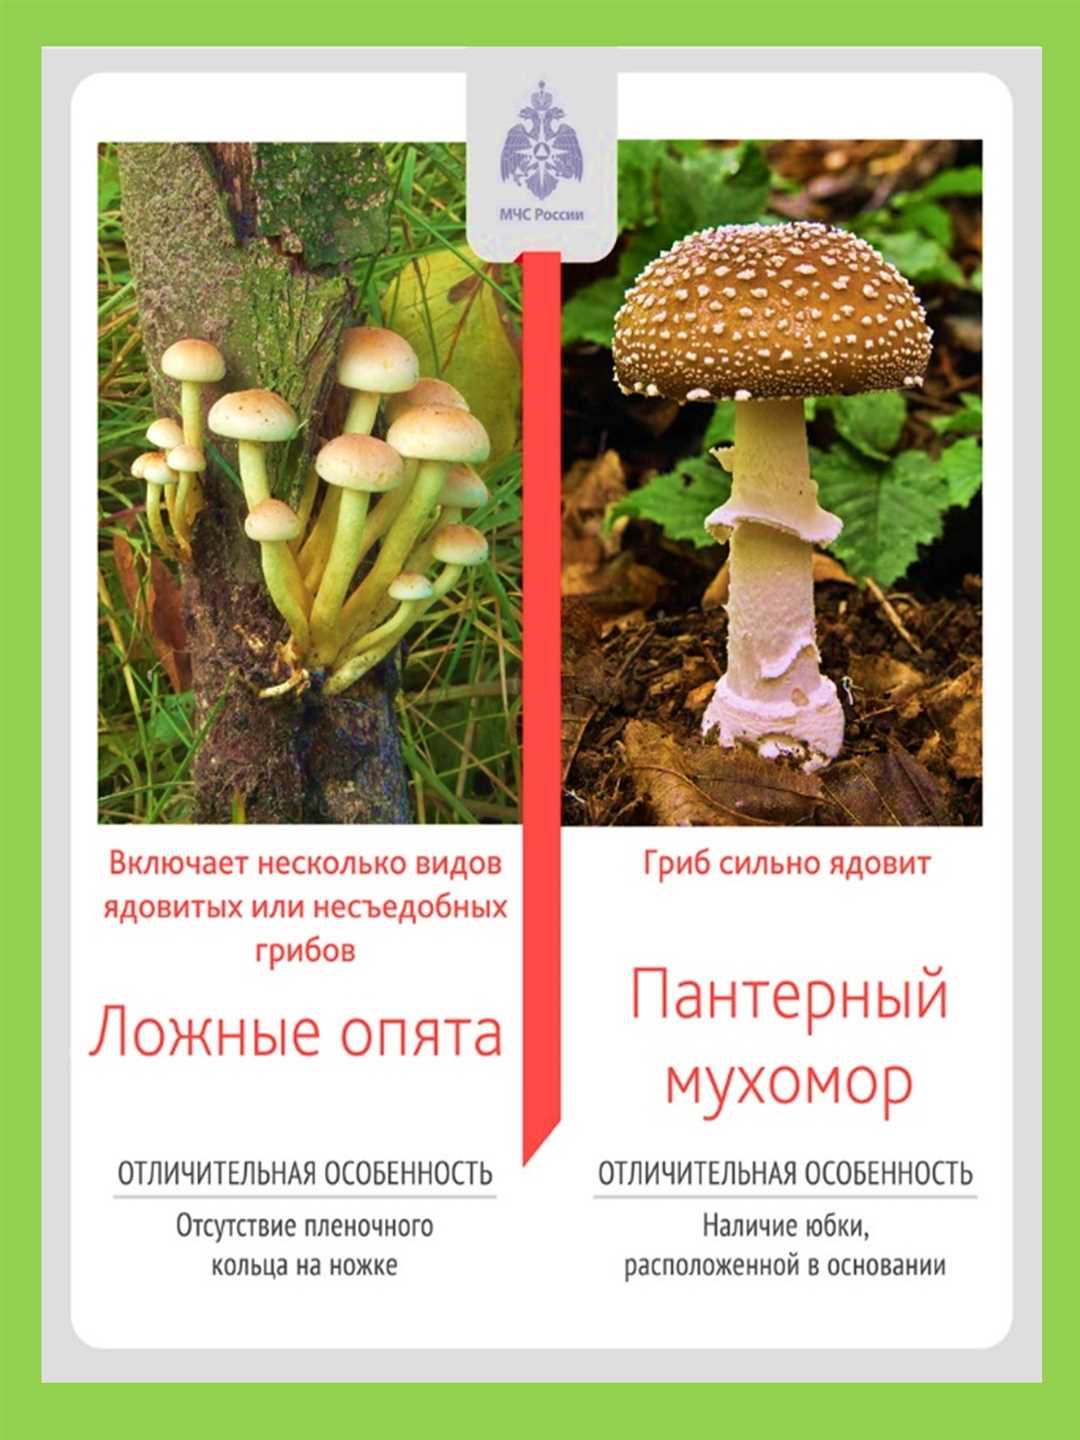 Какие ядовитые грибы встречаются в твоей местности